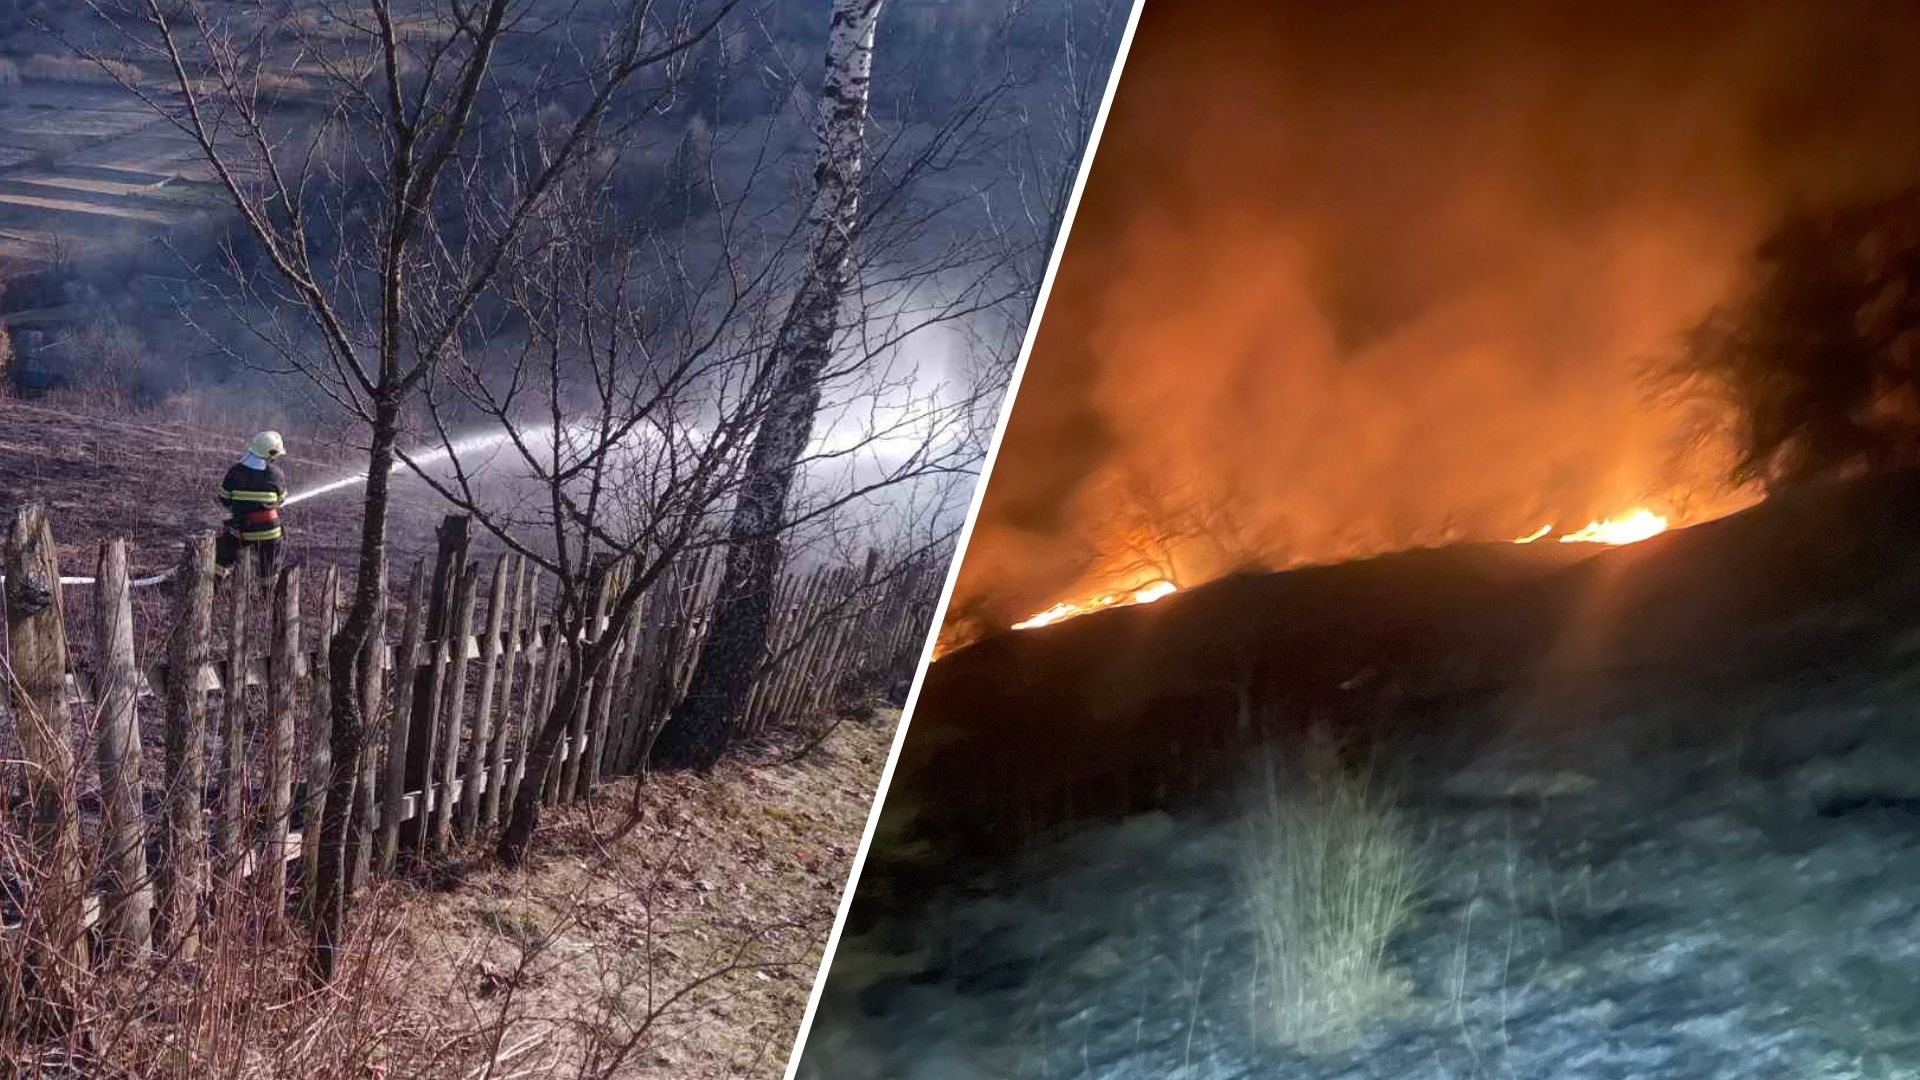 Ezen a napon Kárpátalja minden kerületében, a Rakhiv régió kivételével, bokrok égtek és égtek. Ennek eredményeként a megégett föld területe 6 hektárral nőtt. Összesen 13 tüzet regisztráltak az ökoszisztémákban, ami százalékos növekedést jelent az előző hétvégéhez képest.